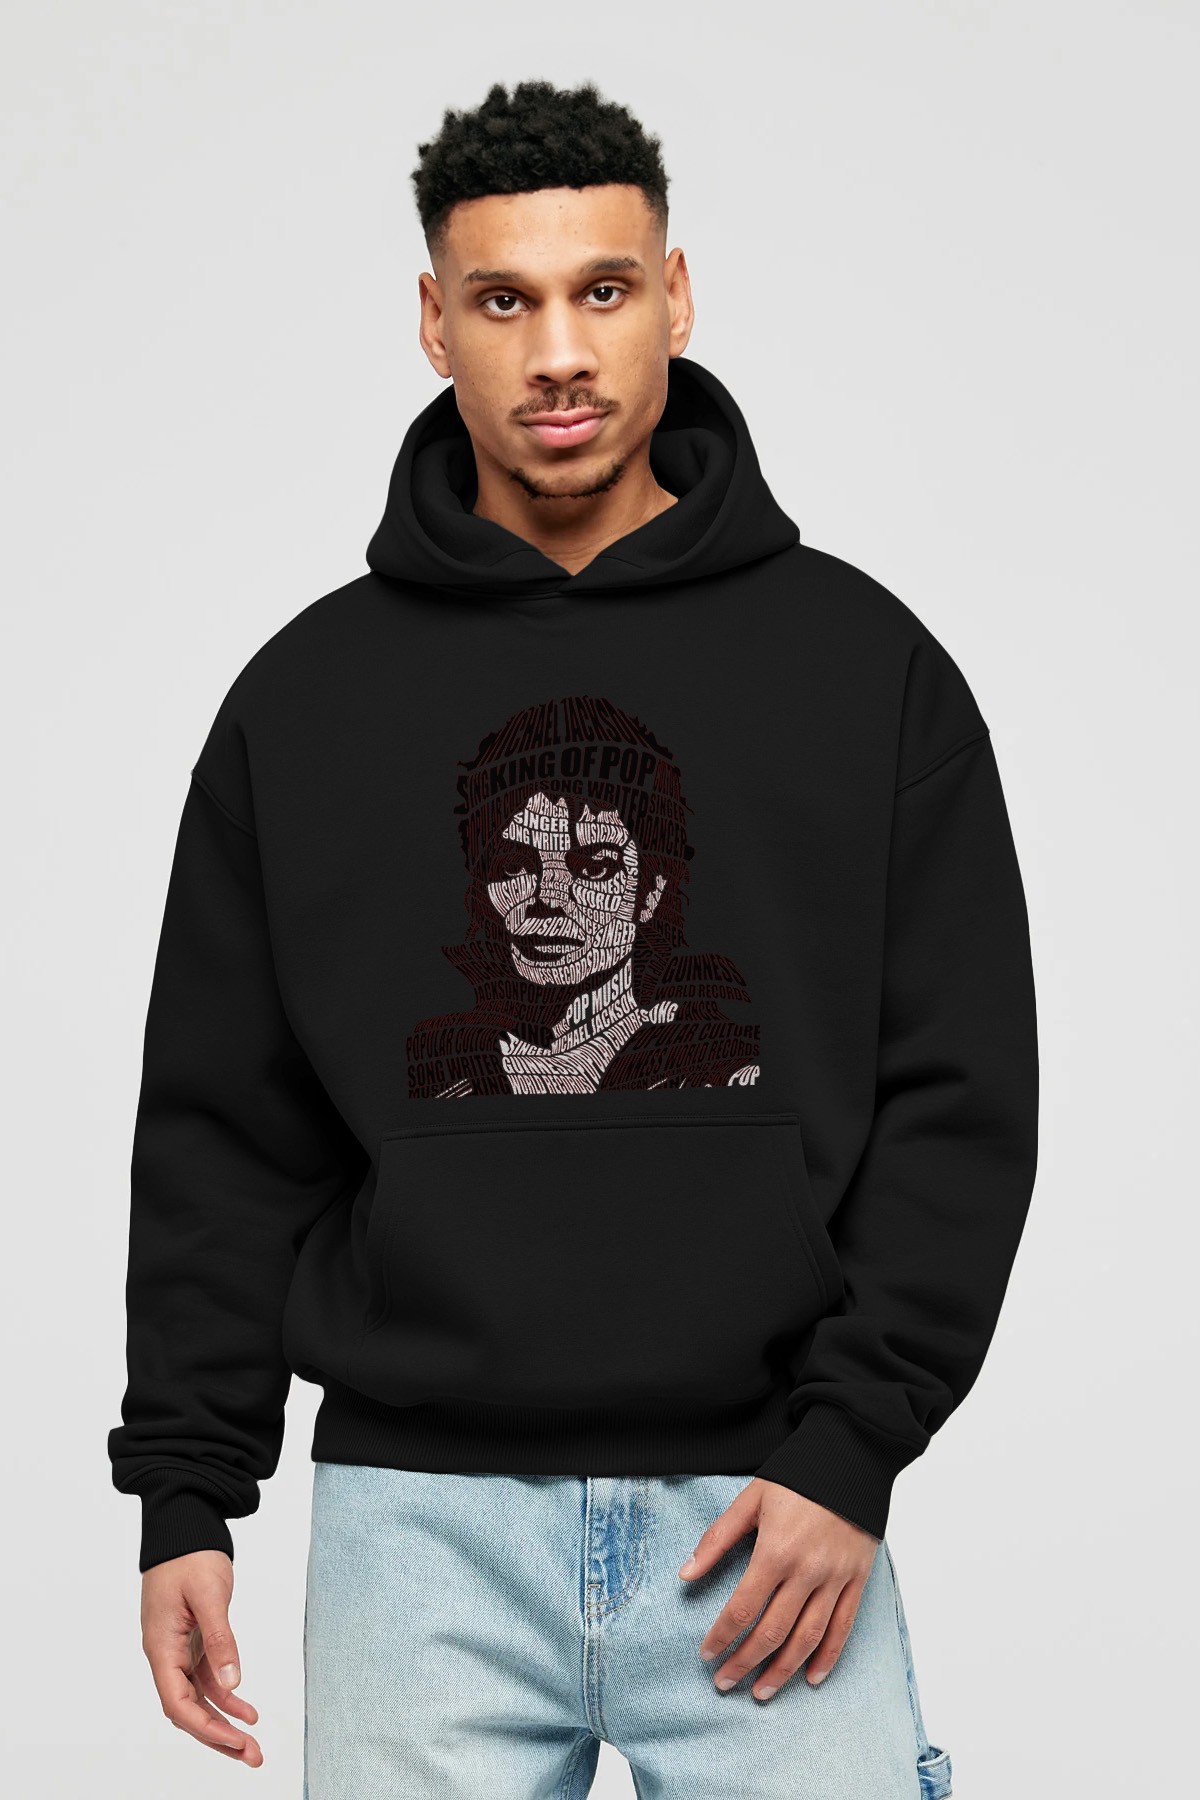 Michael Jackson Calligram Ön Baskılı Hoodie Oversize Kapüşonlu Sweatshirt Erkek Kadın Unisex